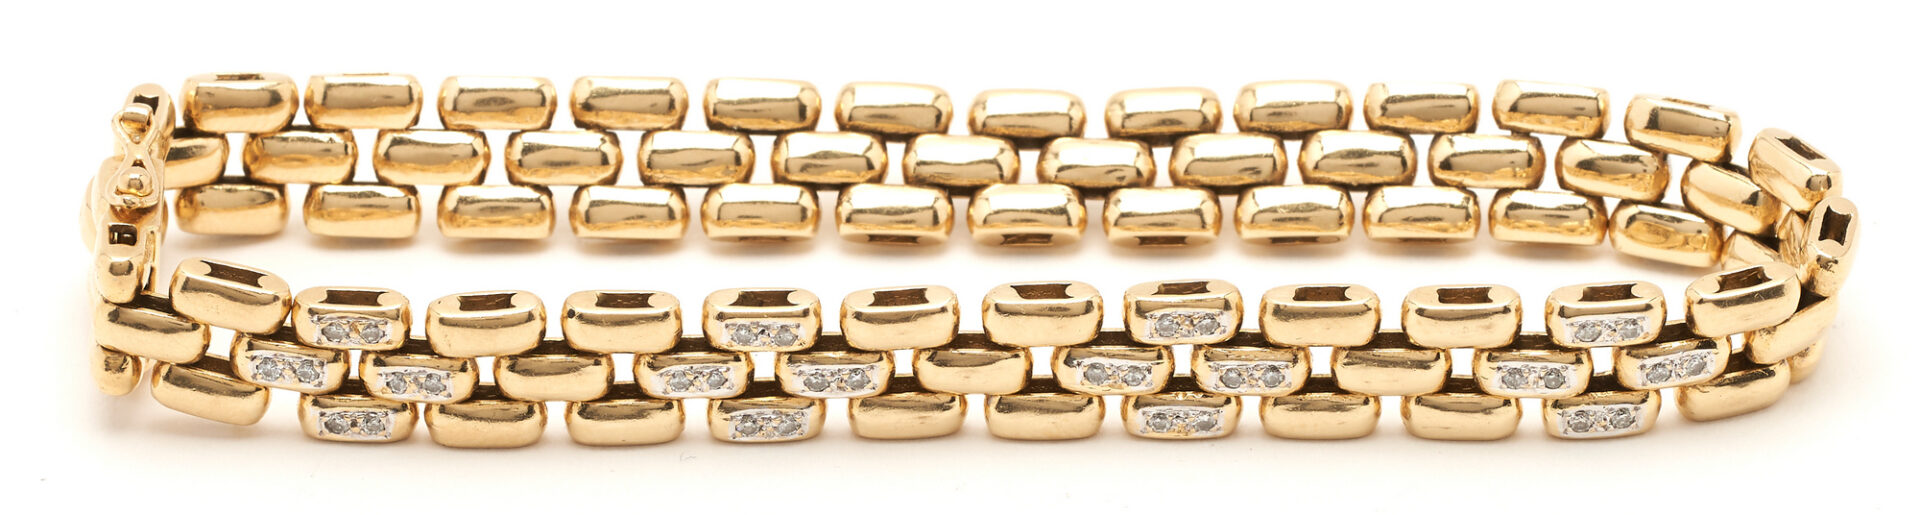 Lot 807: 18K Gold & Diamond Bracelet